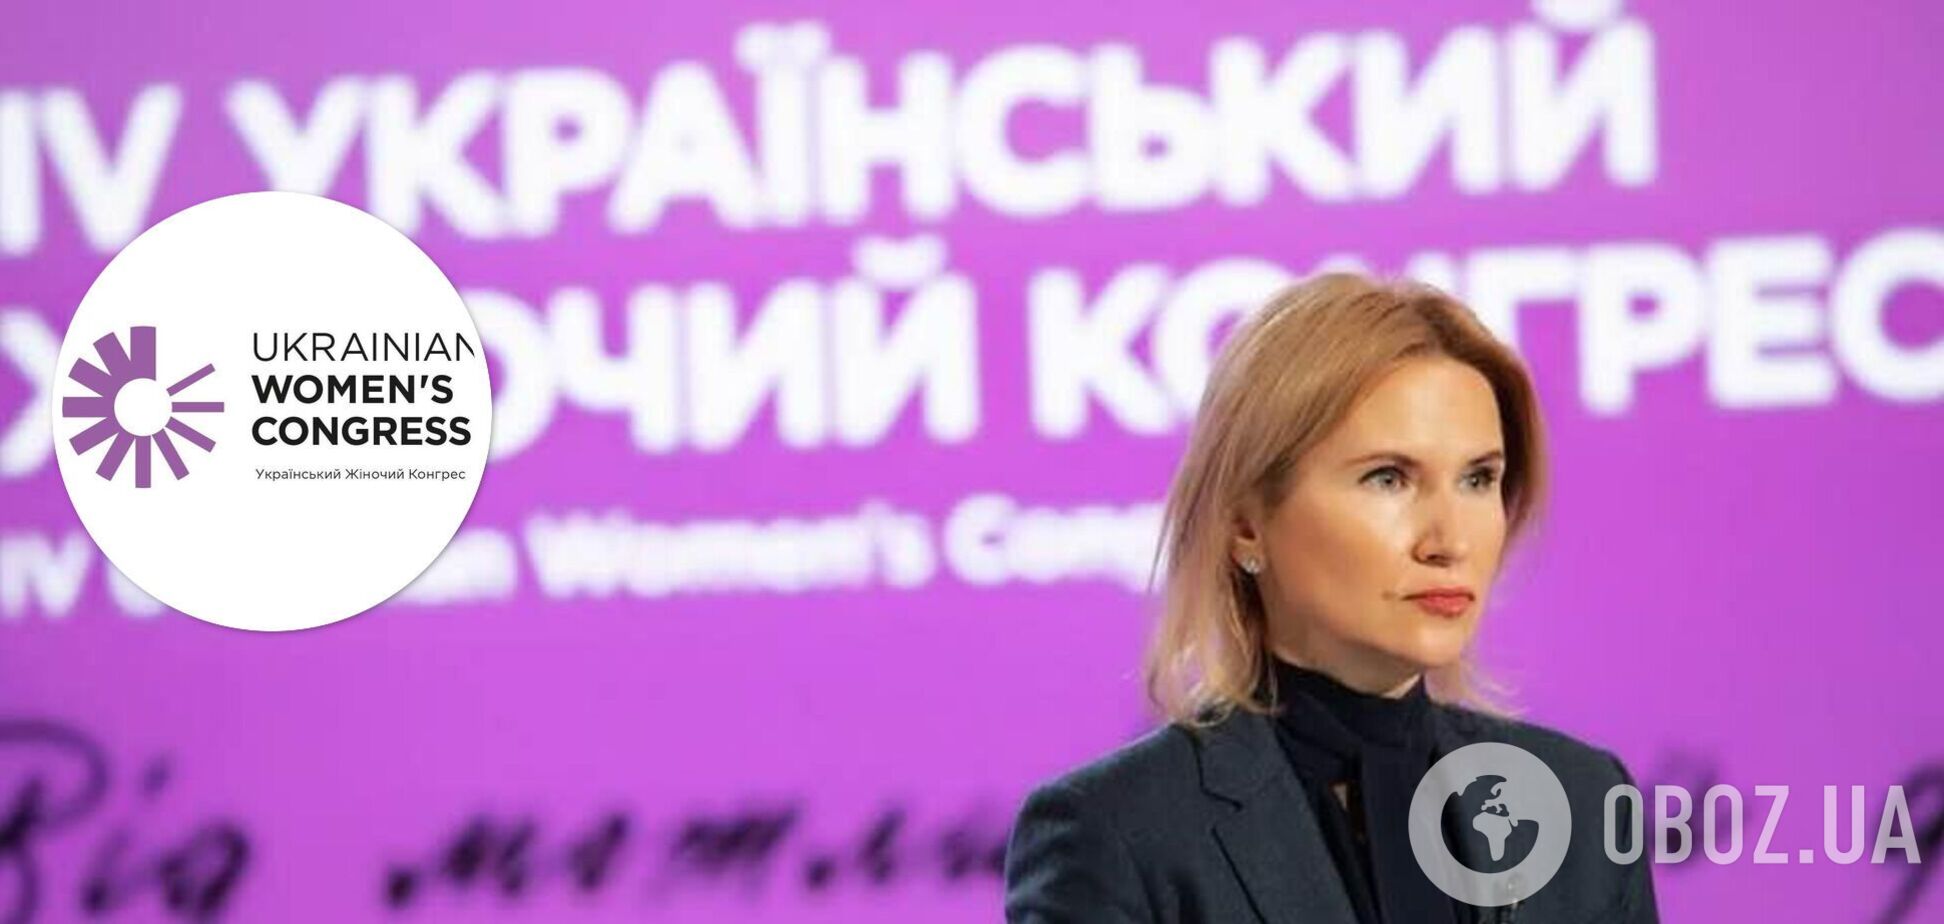 Елена Кондратюк: Цель УЖК – паритетное участие женщин и мужчин в процессах восстановления Украины